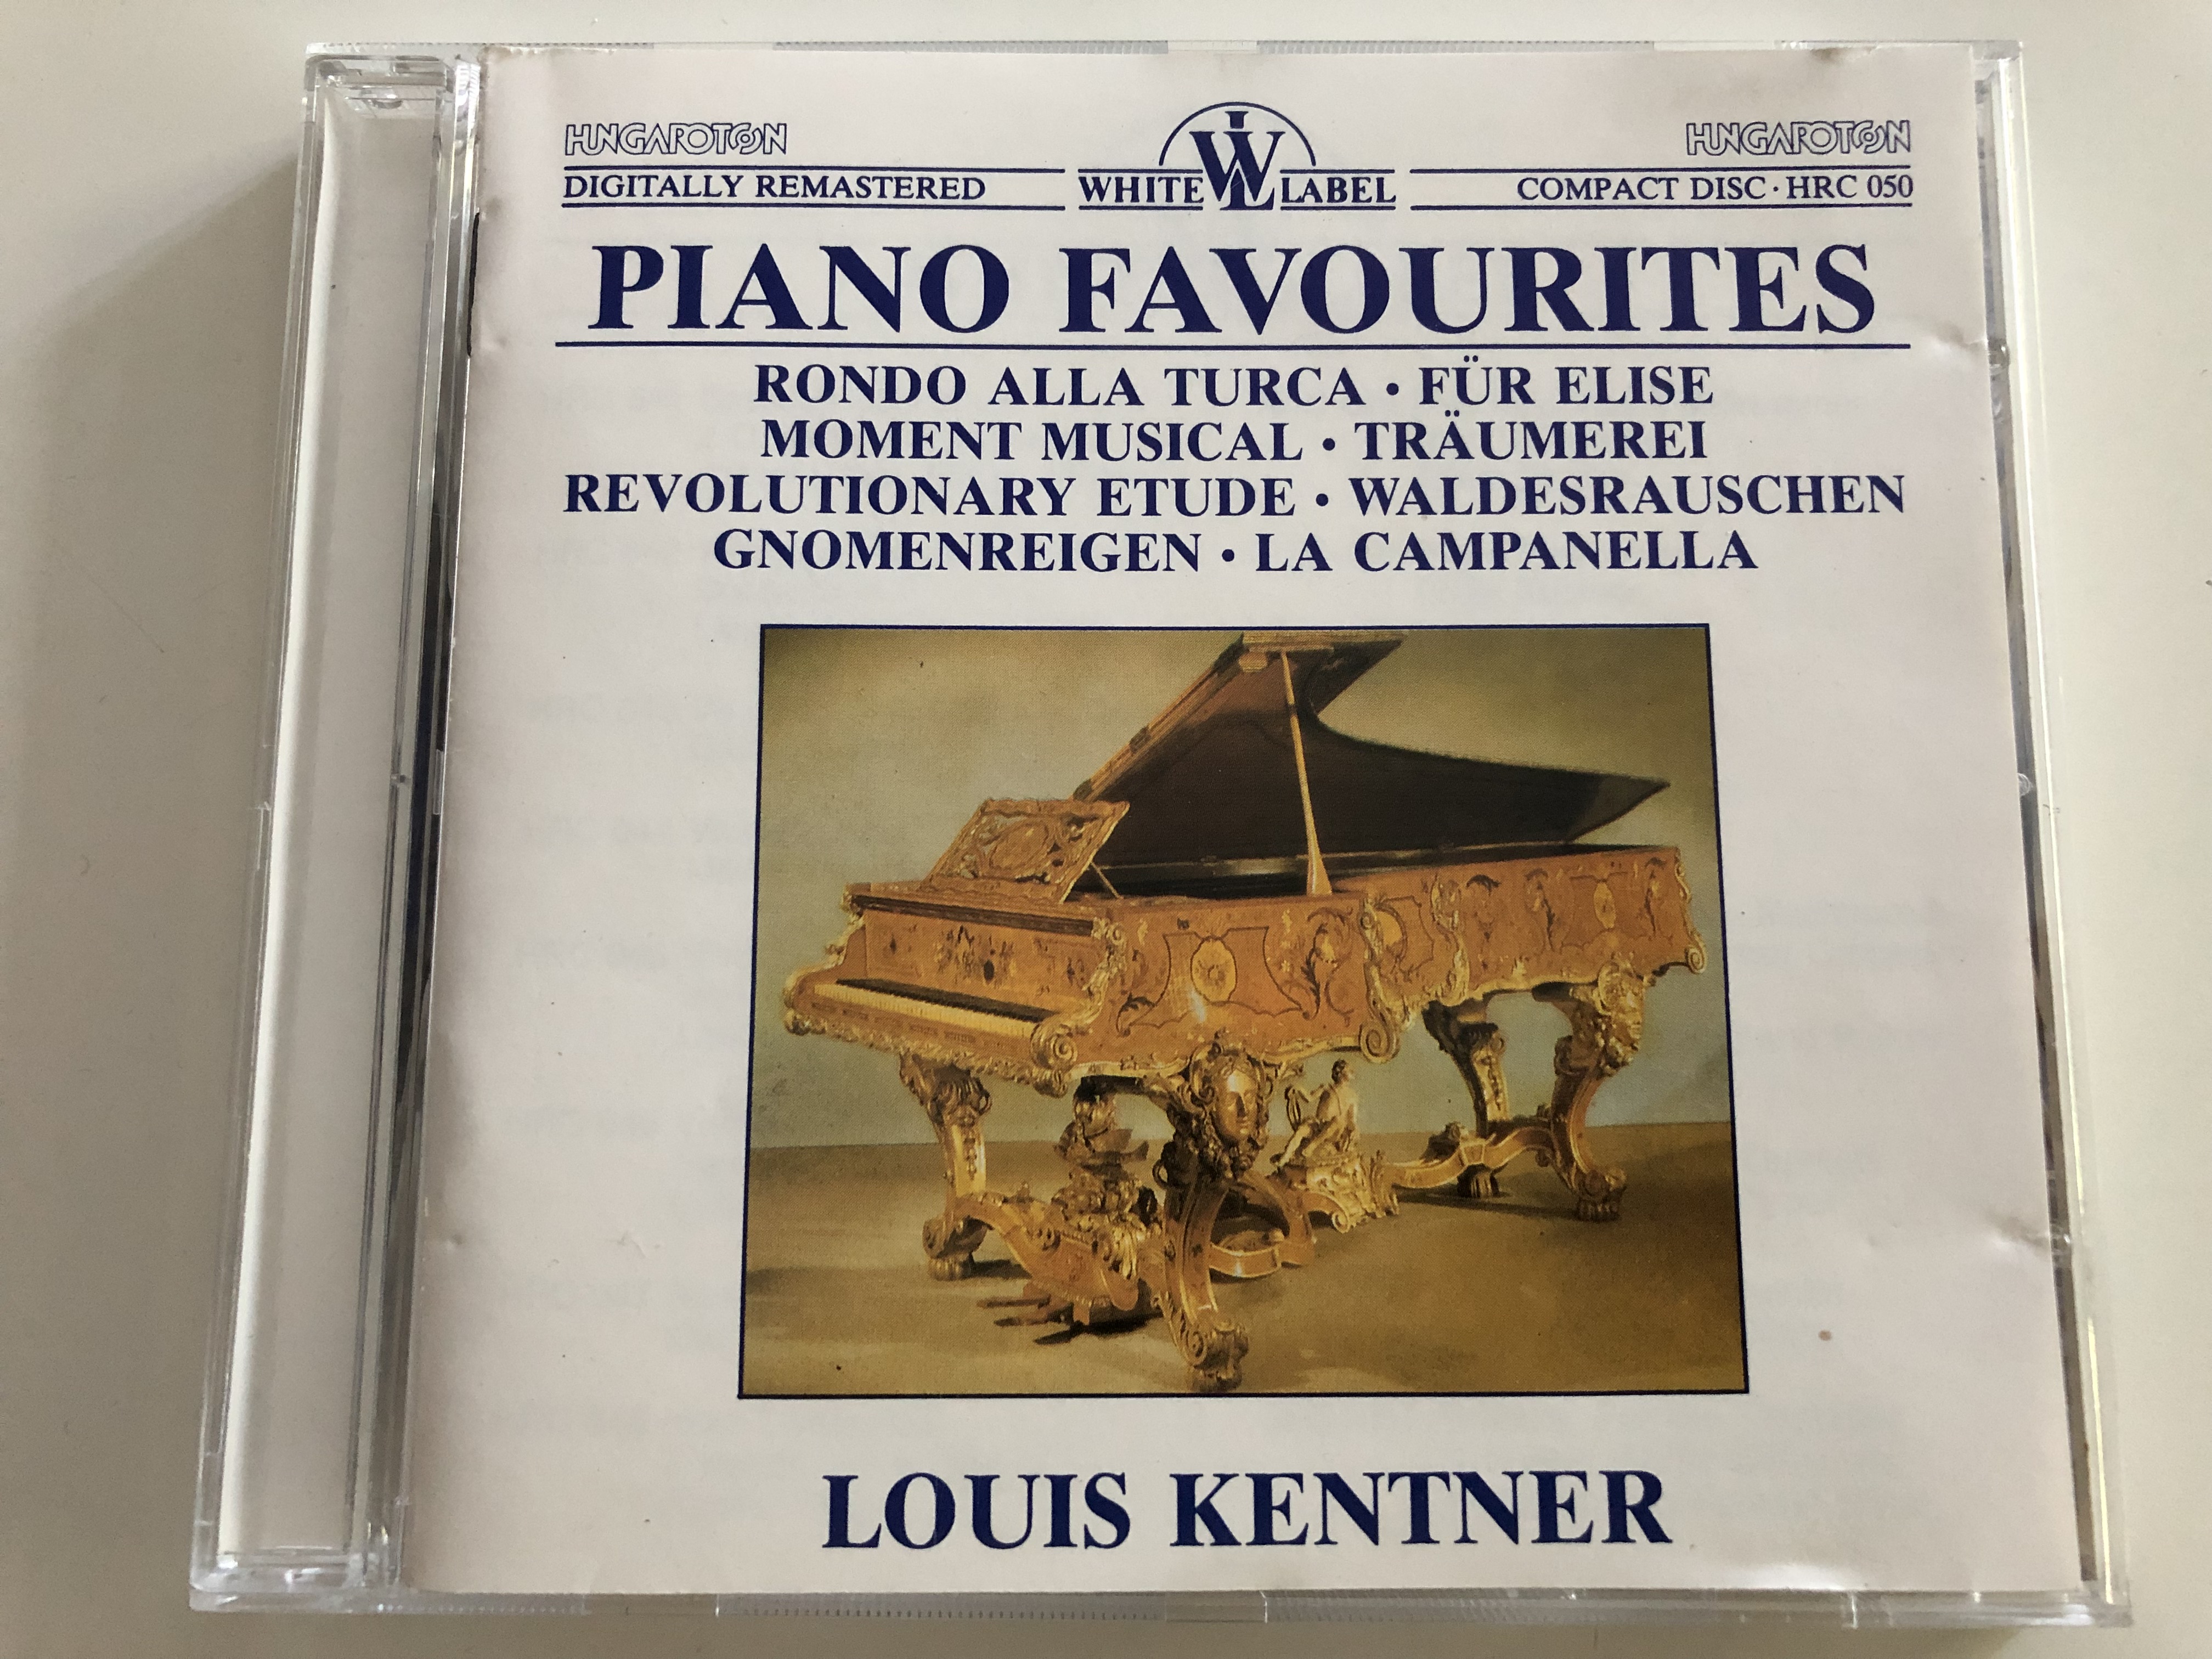 piano-favourites-louis-kentner-piano-rondo-alla-turca-f-r-elise-moment-musical-revolutionary-etude-la-campanella-hungaroton-white-label-audio-cd-1987-hrc-050-1-.jpg